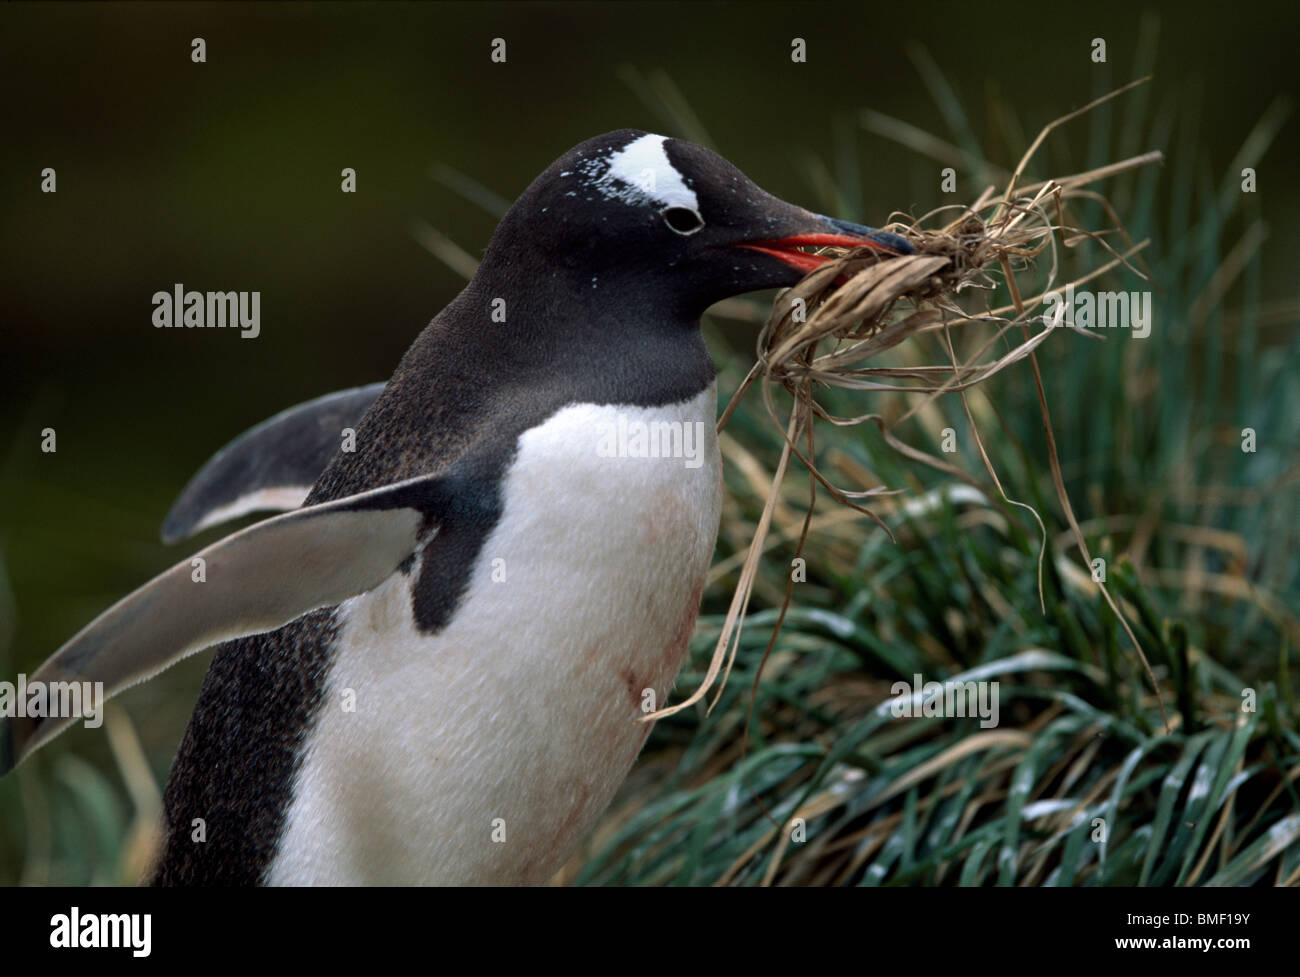 Gentoo penguin building nest, Fortuna Bay, South Georgia Stock Photo